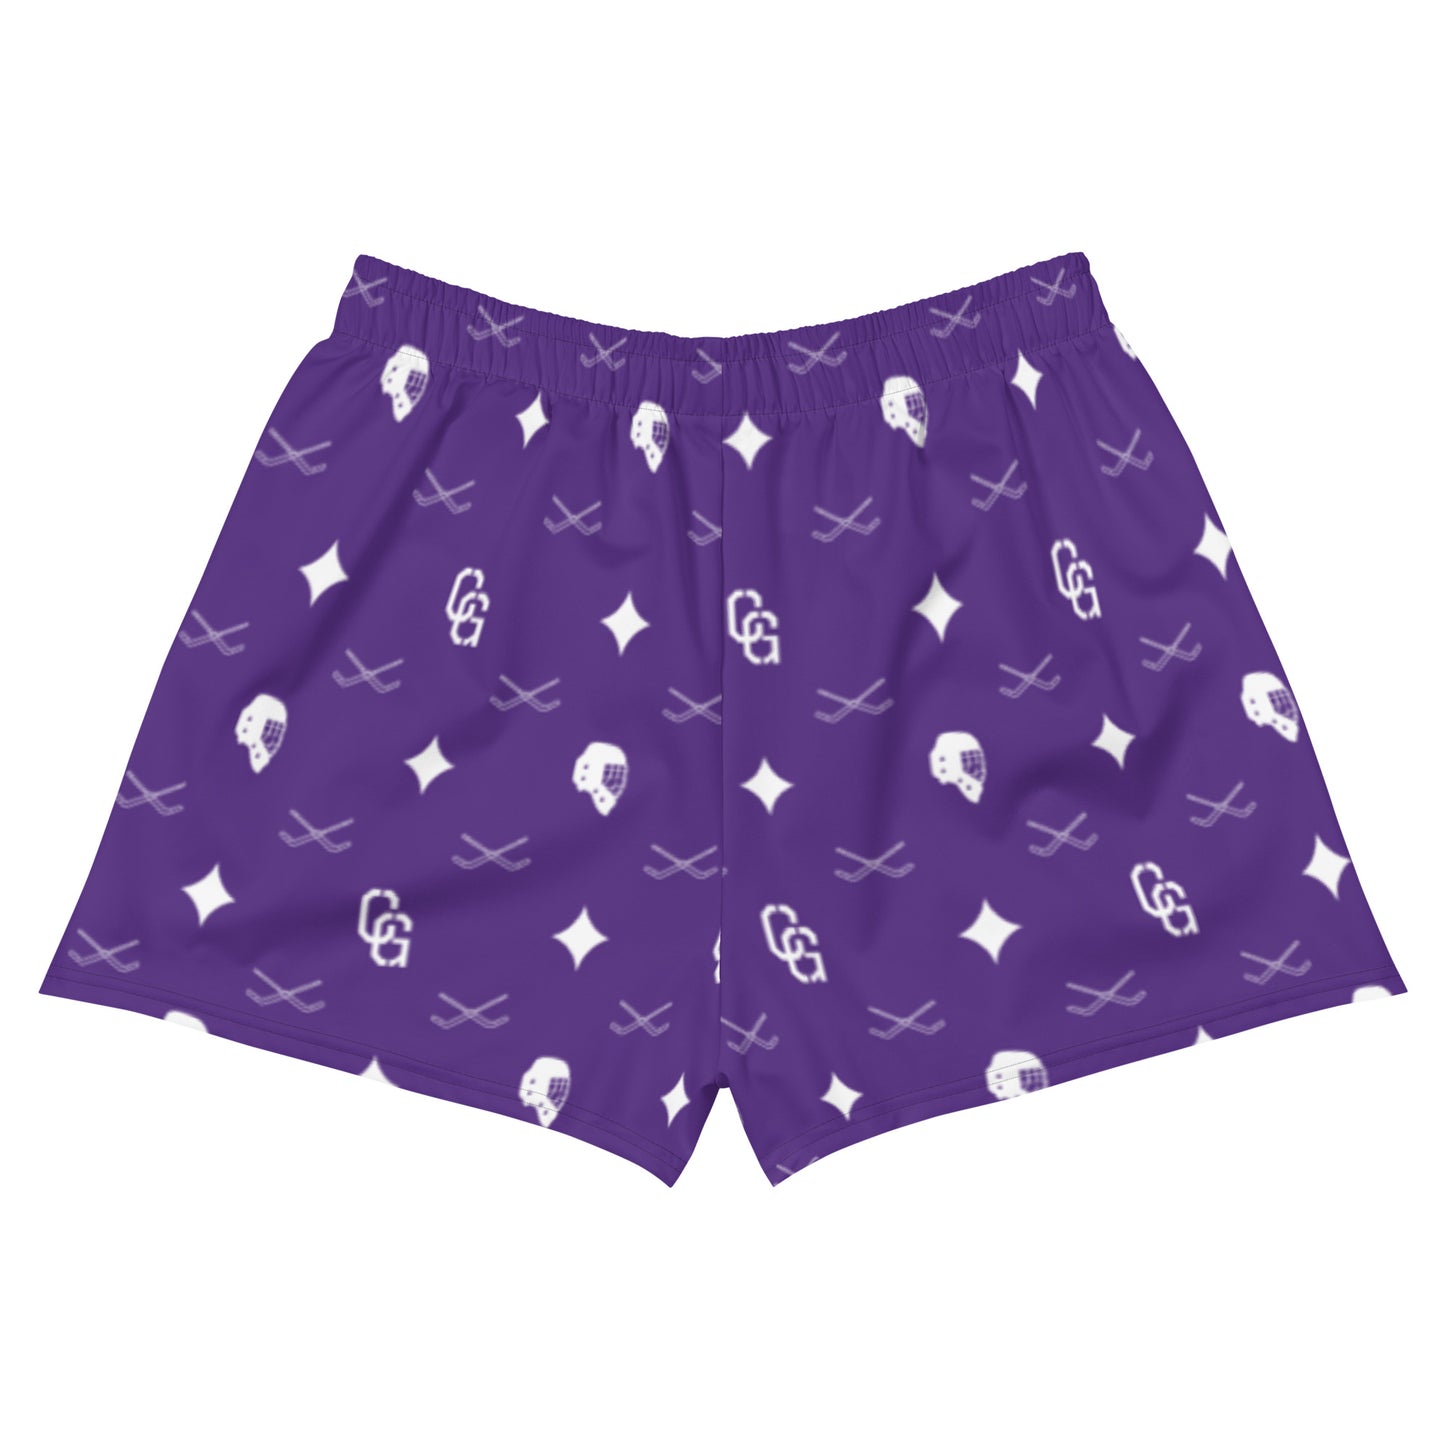 Women's Purple Lux Print Athletic Short Shorts